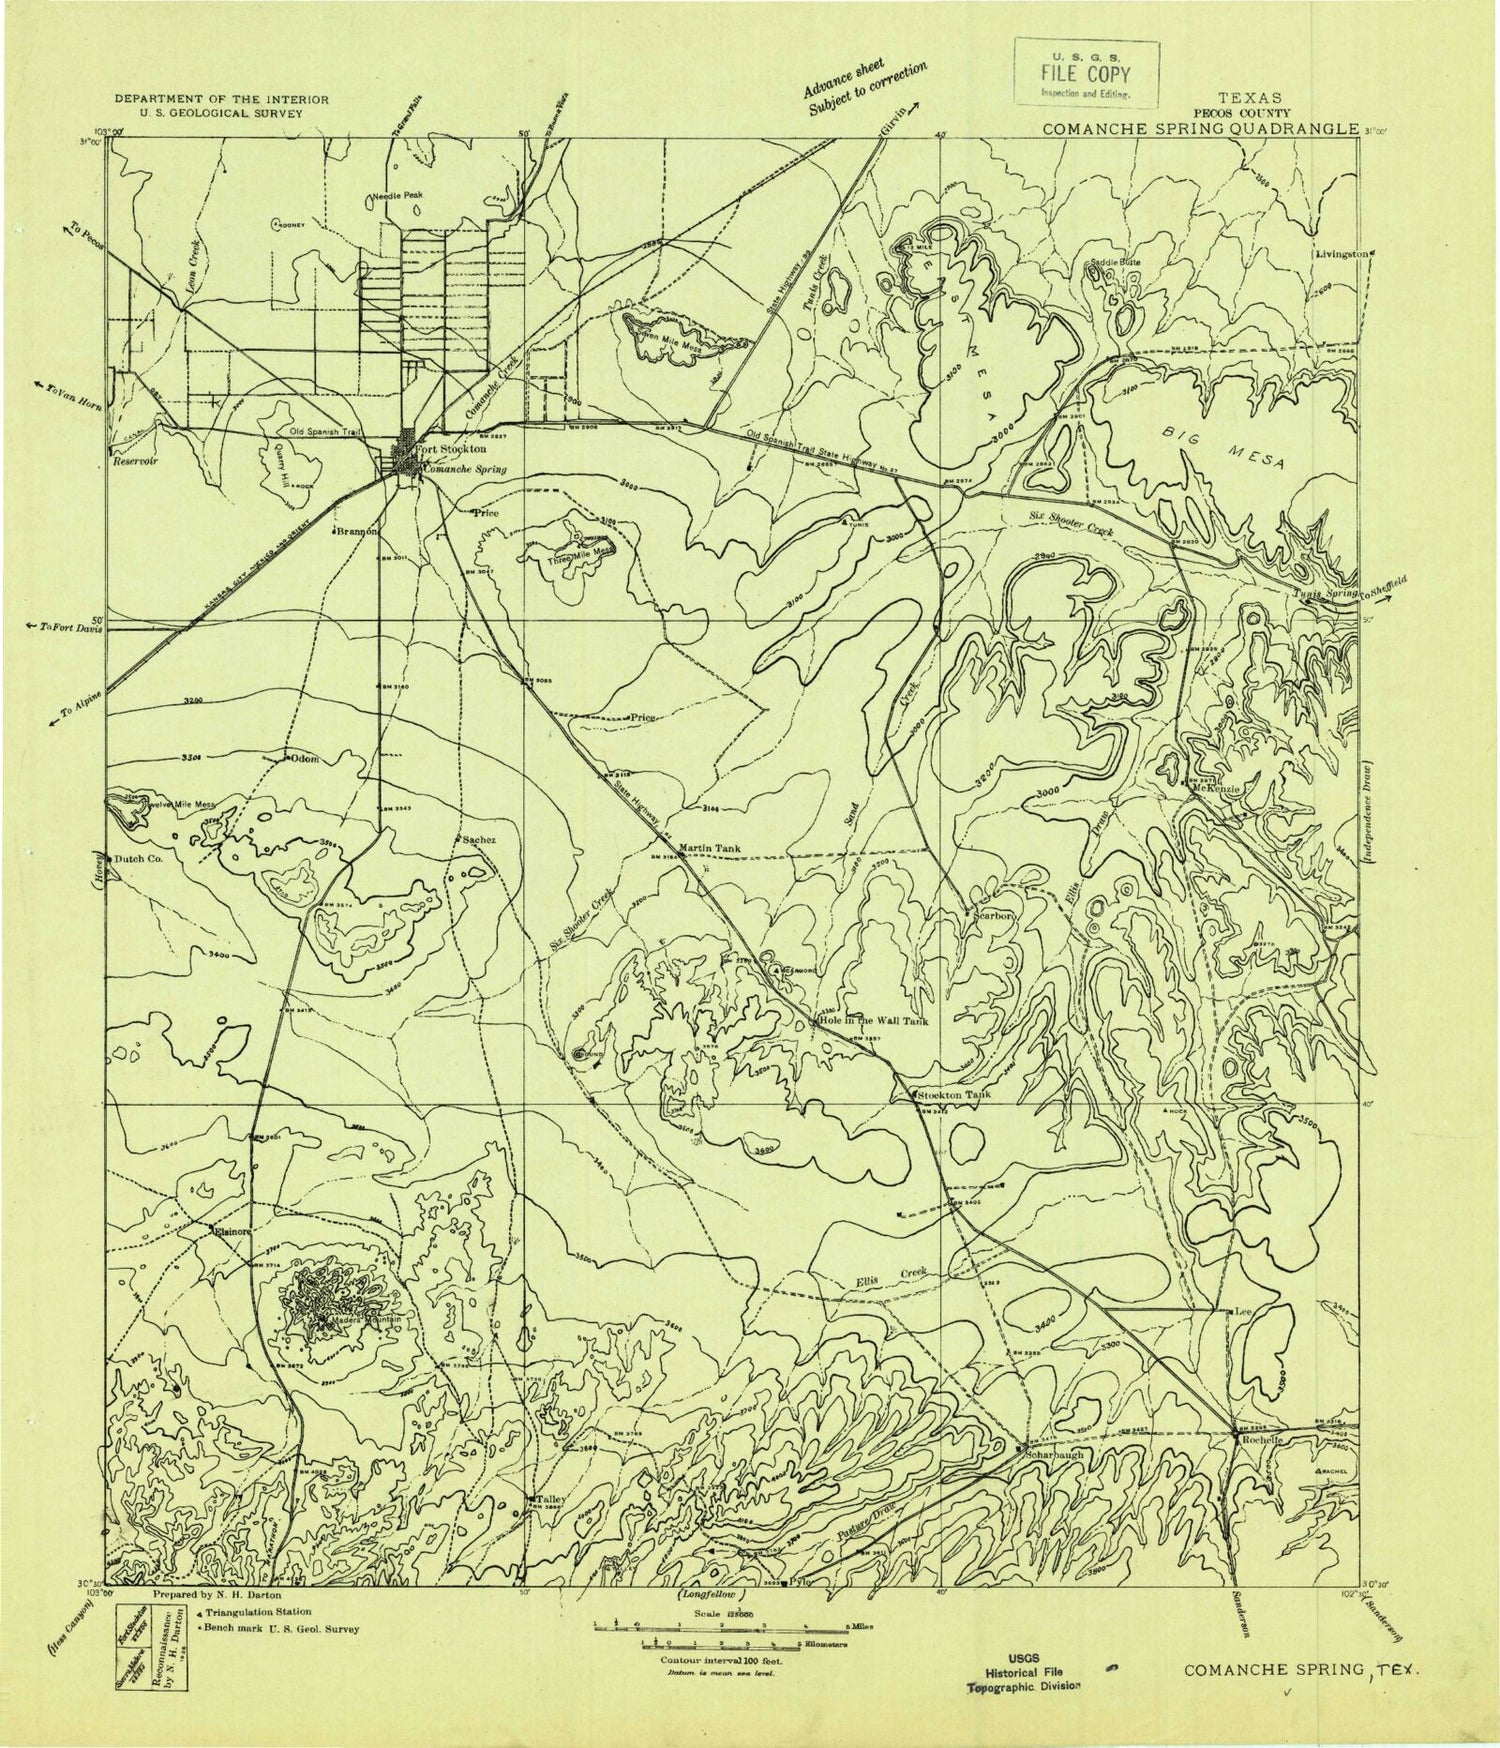 Historic 1928 Comanche Springs Texas 30'x30' Topo Map Image